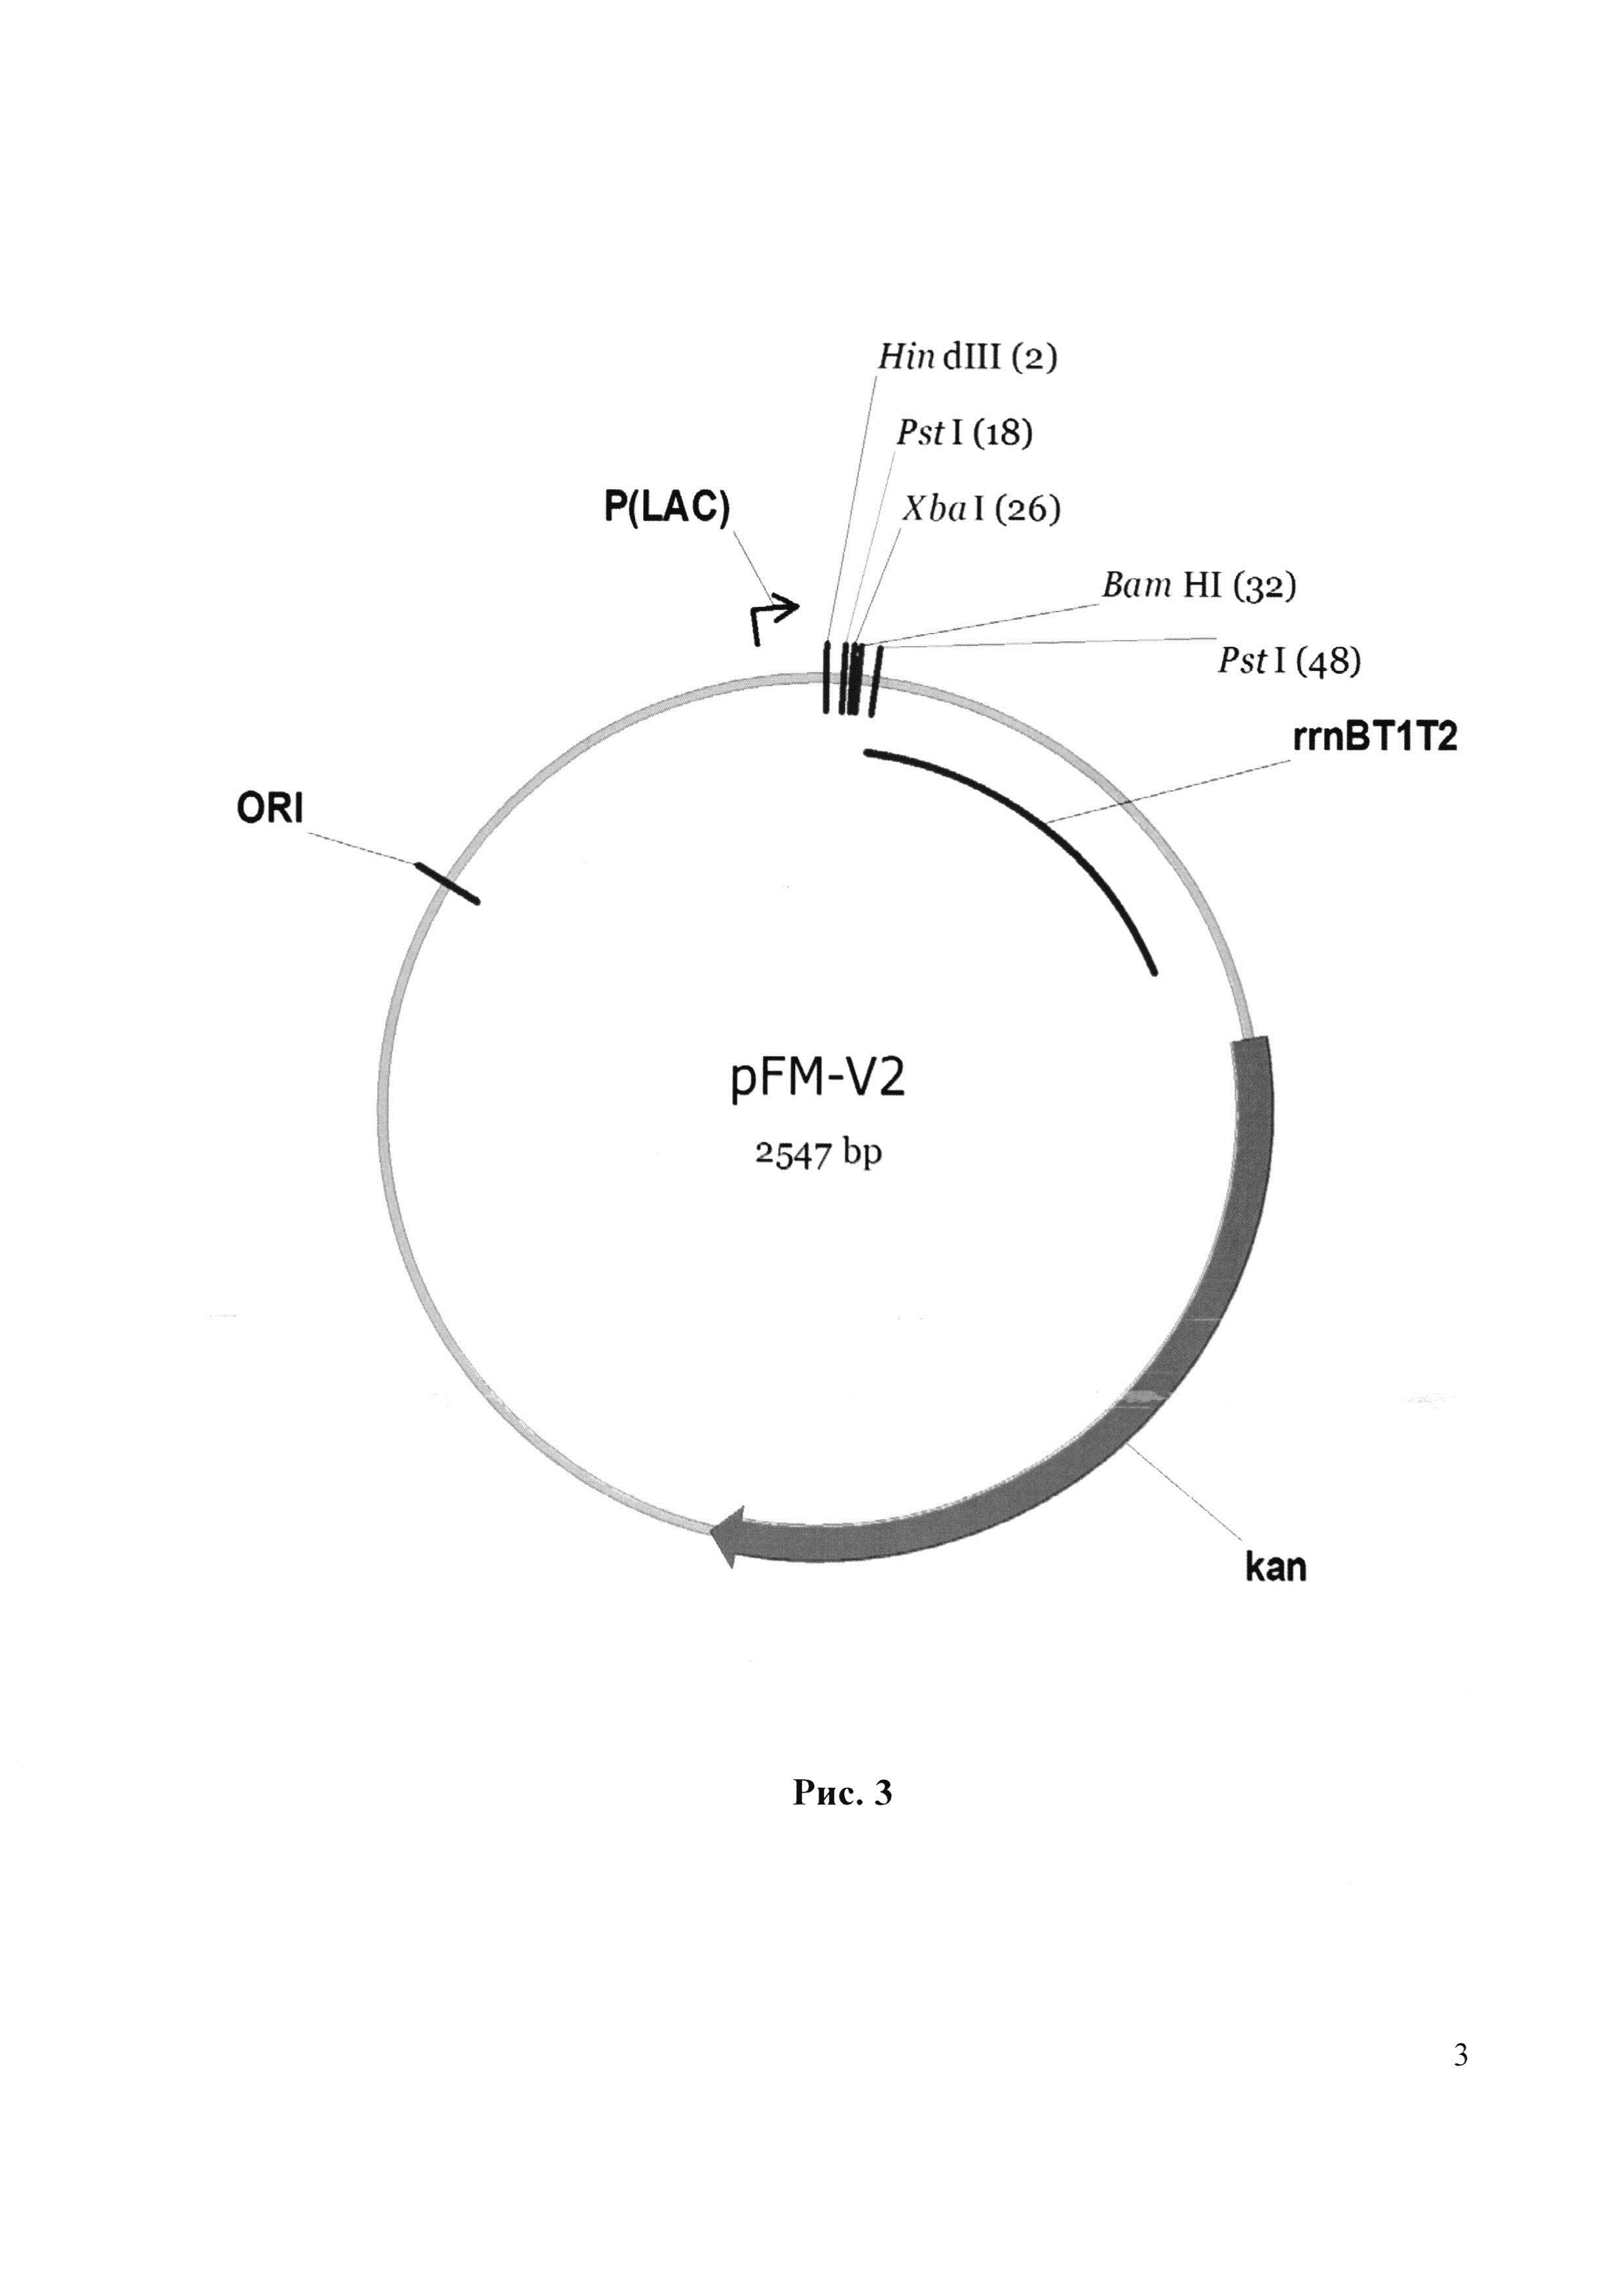 Рекомбинантная плазмида pFM-IFN-17, обеспечивающая экспрессию интерферона альфа-2b человека, рекомбинантная плазмида pFM-АР, обеспечивающая экспрессию фермента метионинаминопептидазы E. coli, биплазмидный штамм Escherichia coli FM-IFN-АР (pFM-IFN-17, pFM-АР) - продуцент (Met-) рекомбинантного интерферона альфа-2b человека